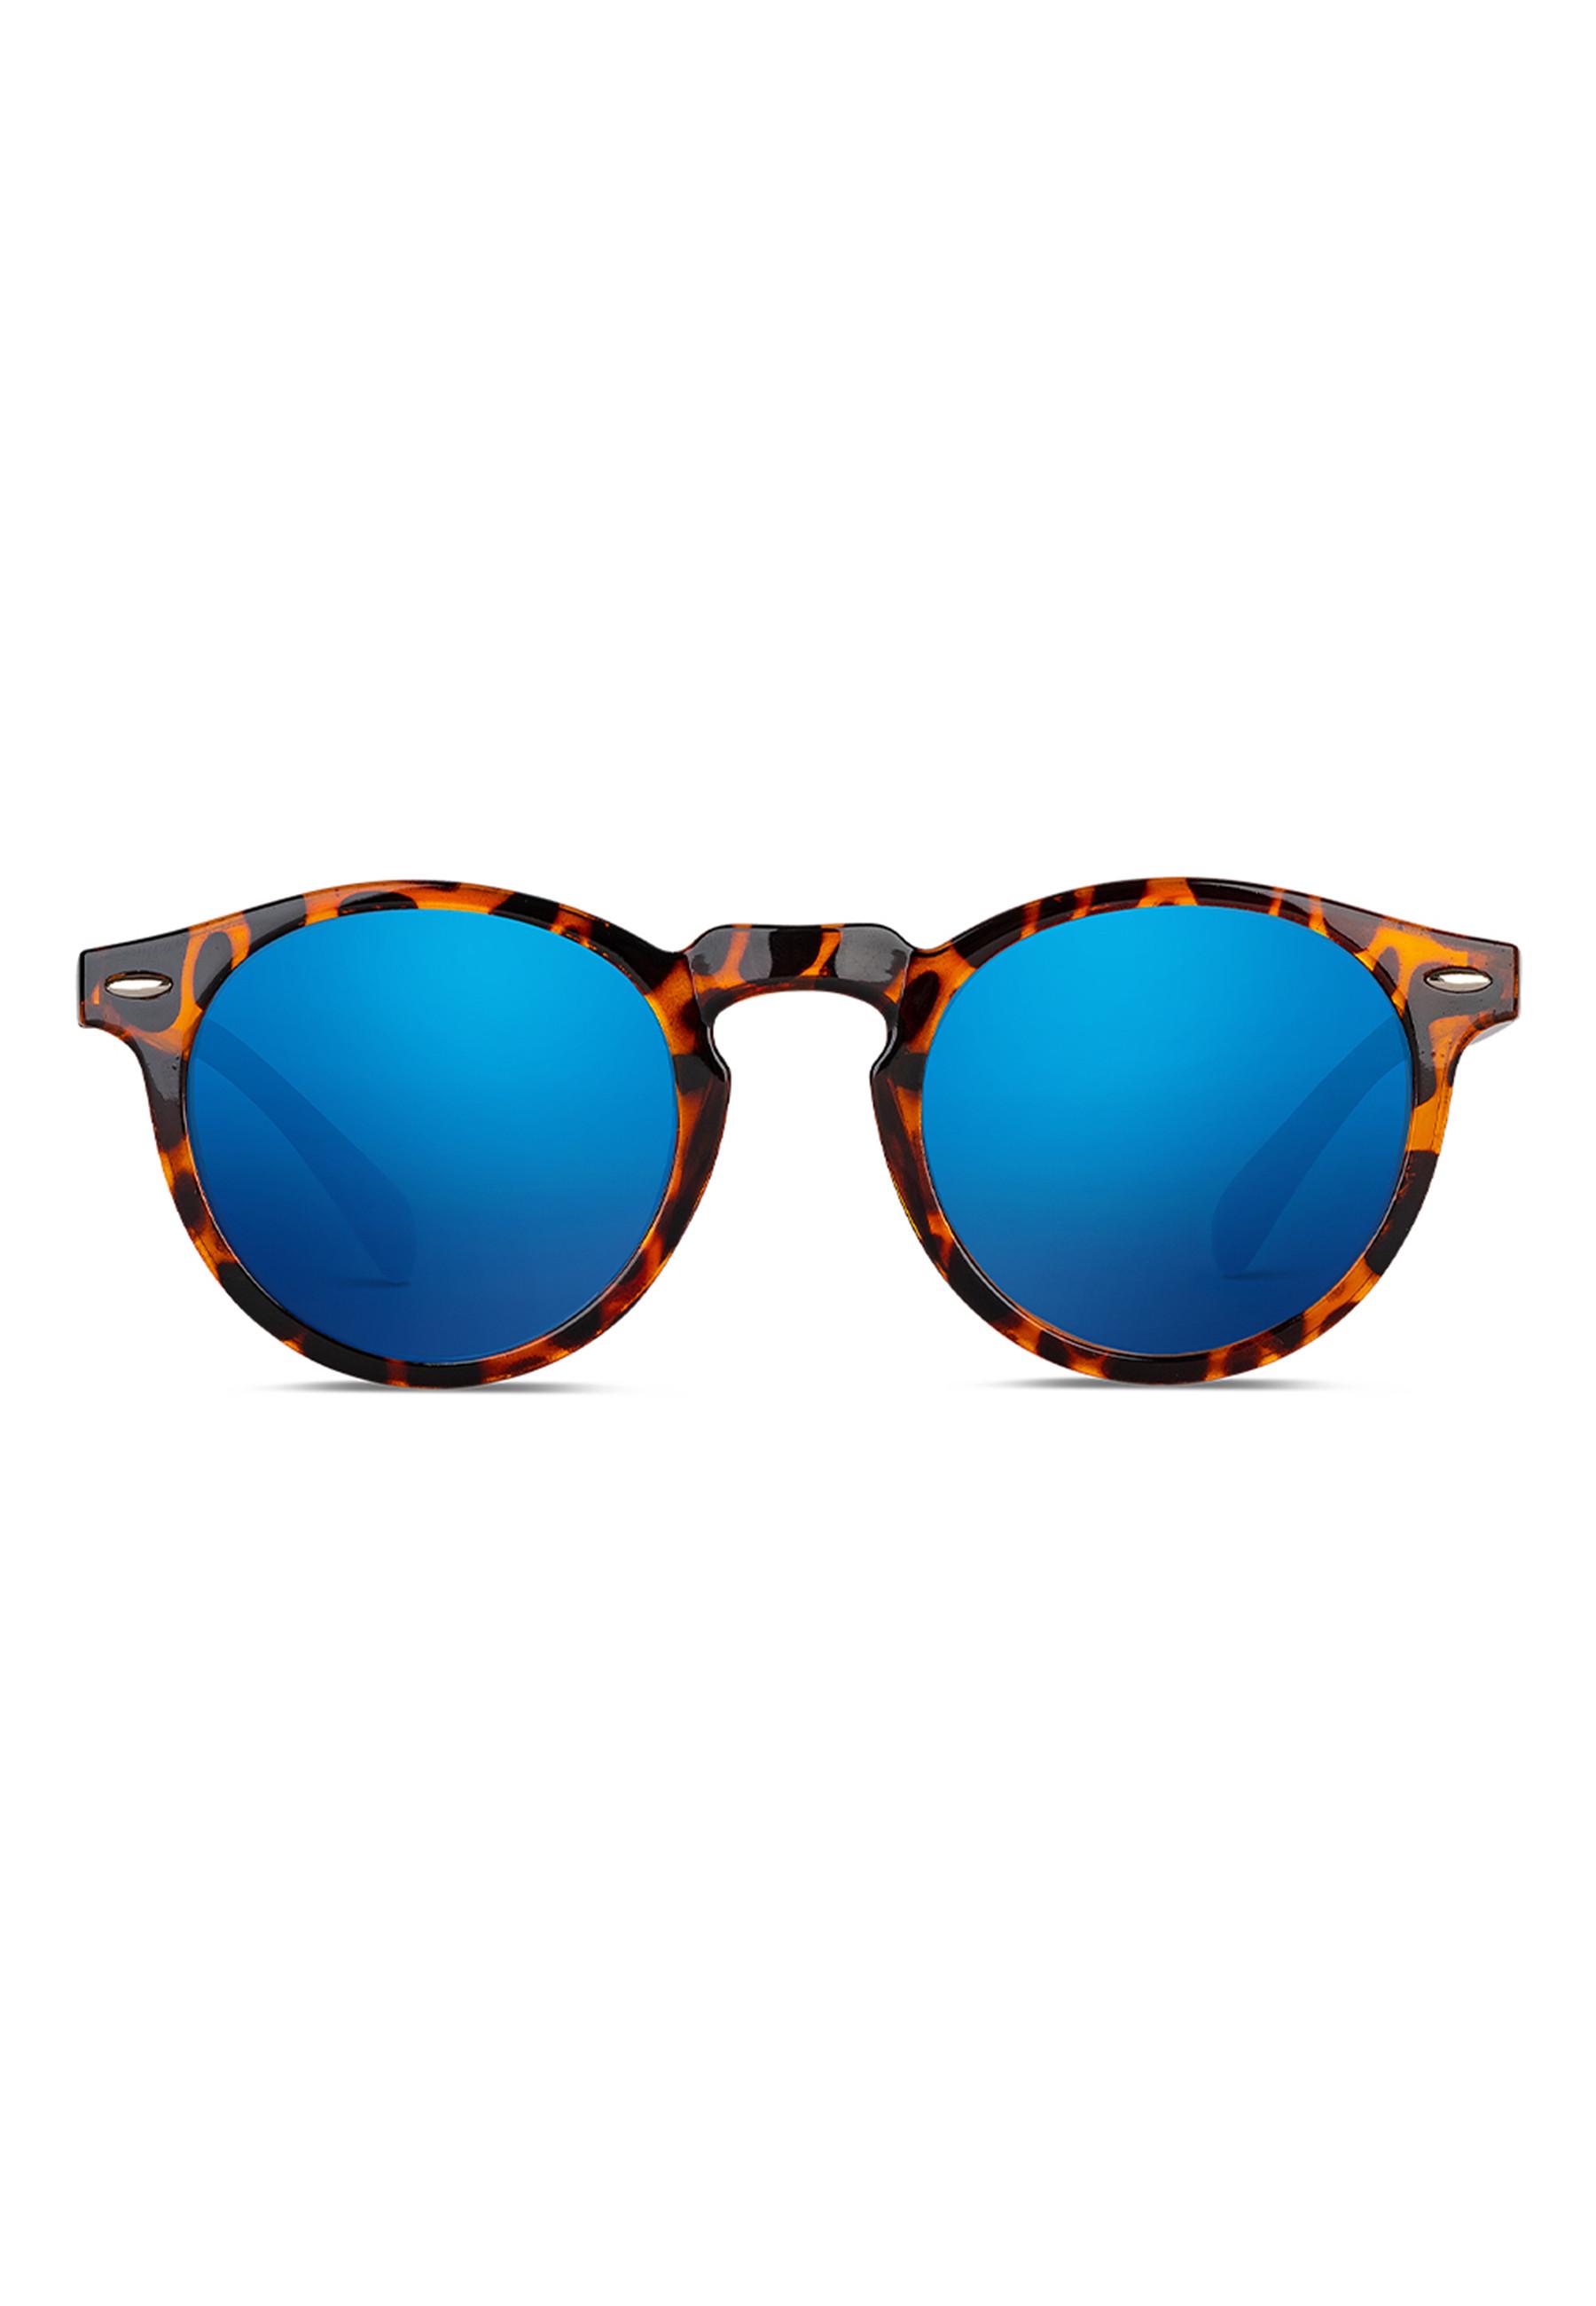   Sonnenbrille mit 100% UV-Schutz 